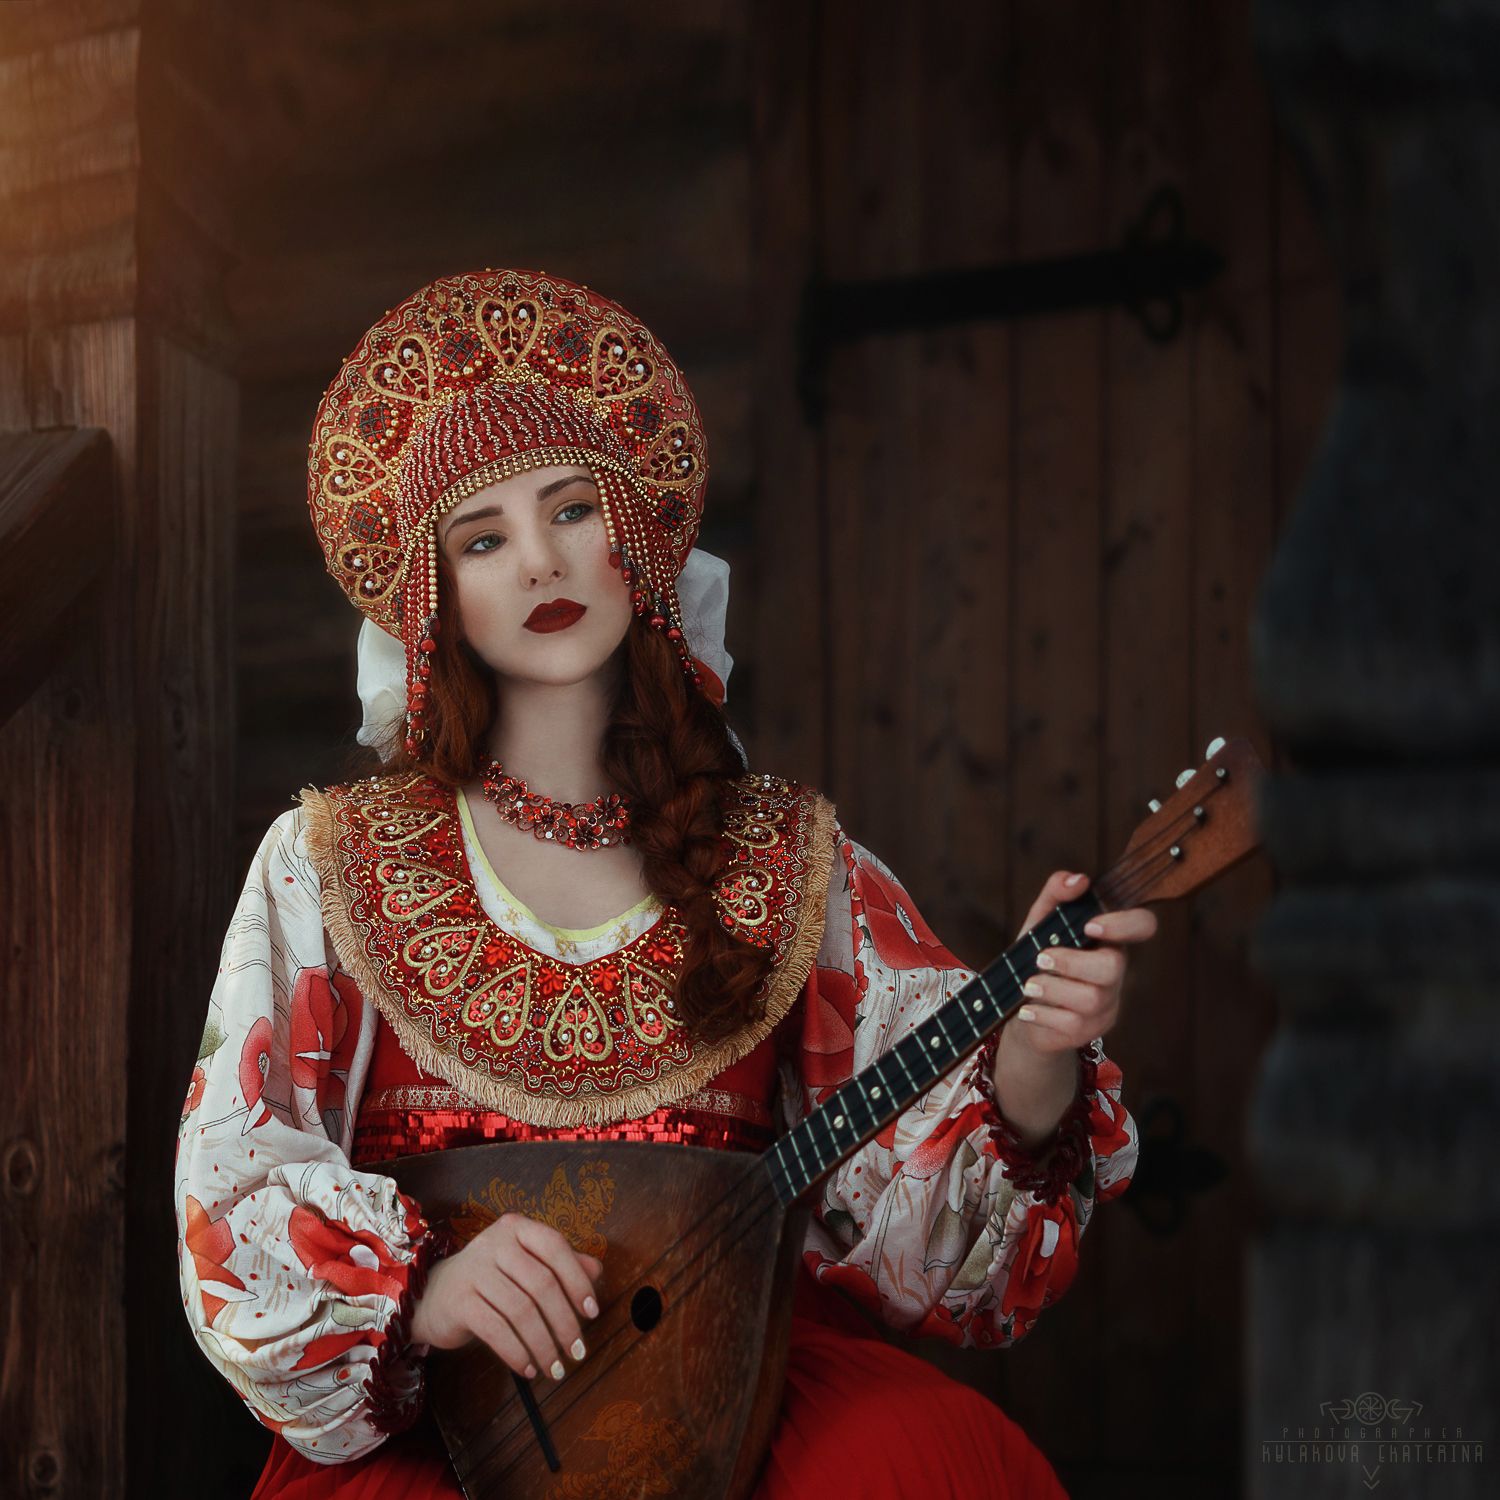 традиции, костюм, музыкальные инструменты, балалайка, красный, русский стиль, история, модель, рыжий, Екатерина Кулакова